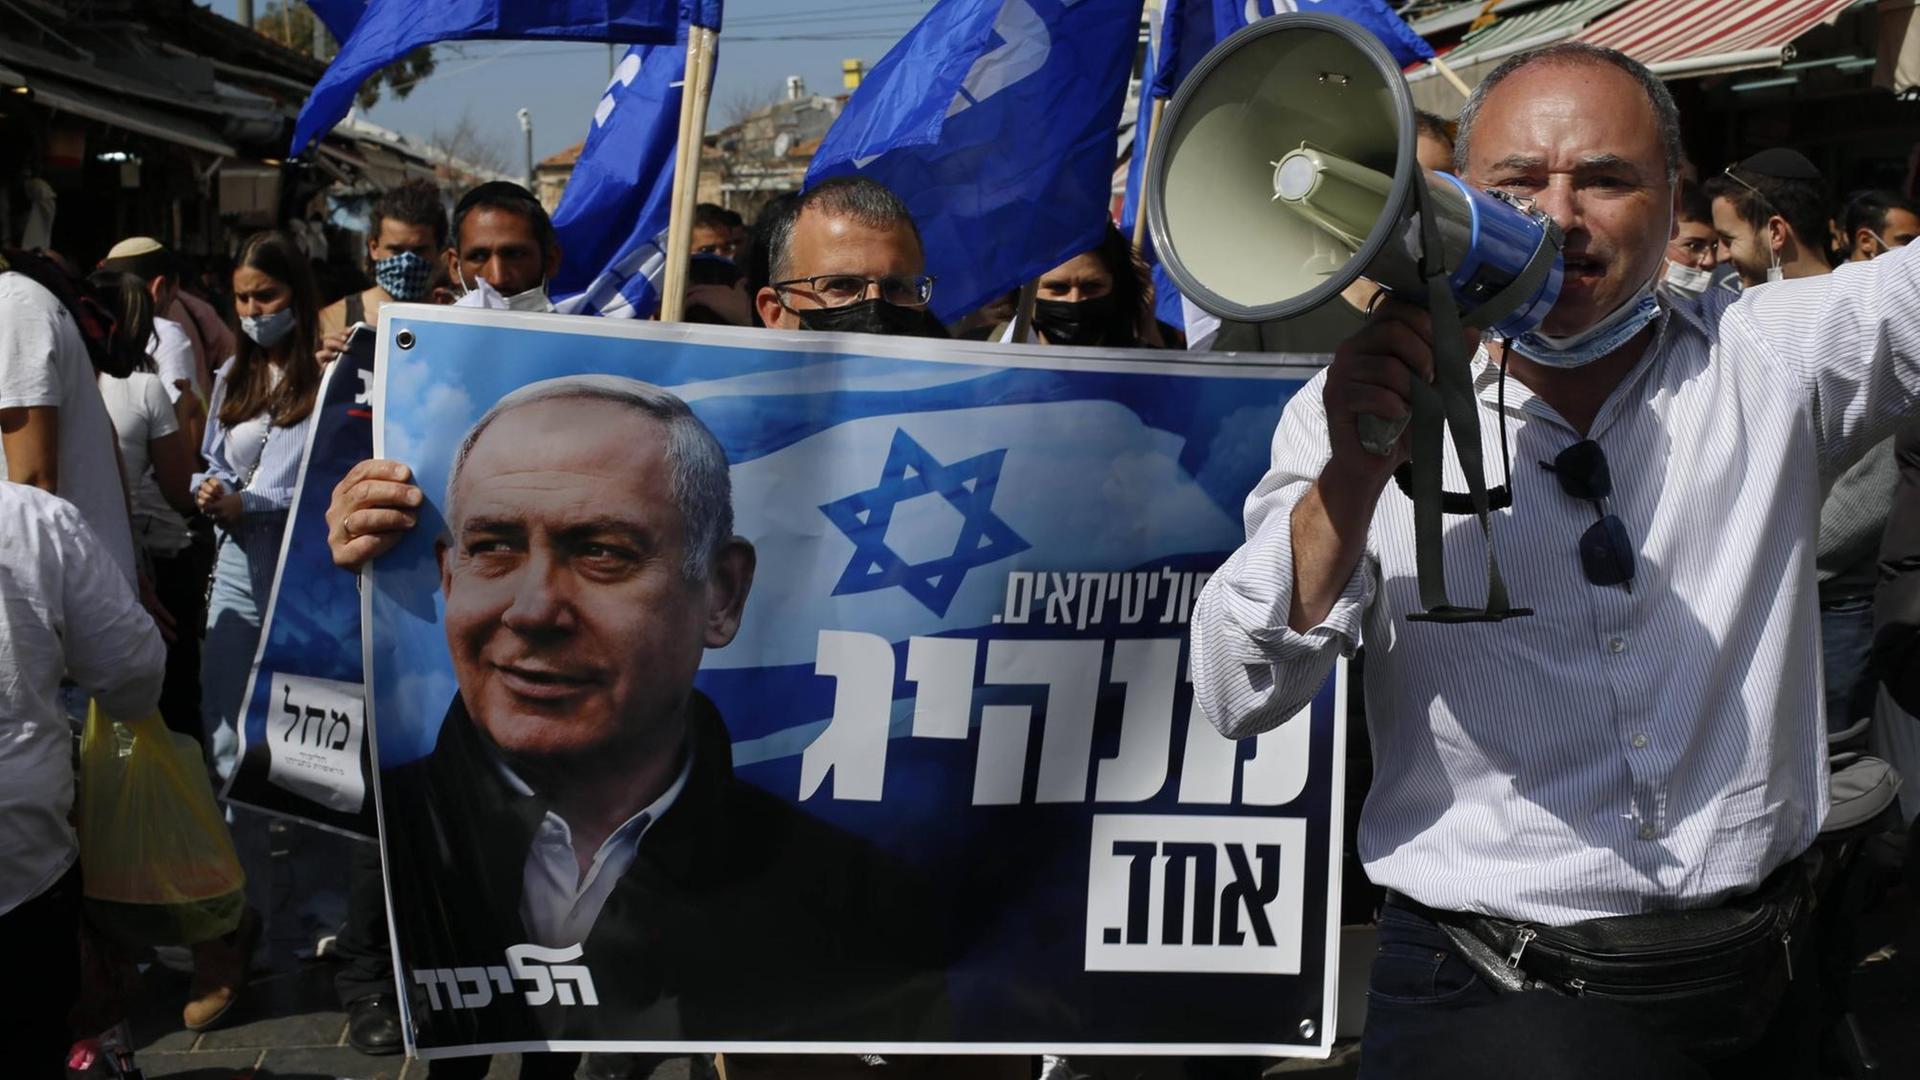 Bei der Parlaments-Wahl in Israel hat Benjamin Netanjahu am meisten Stimmen bekommen. 